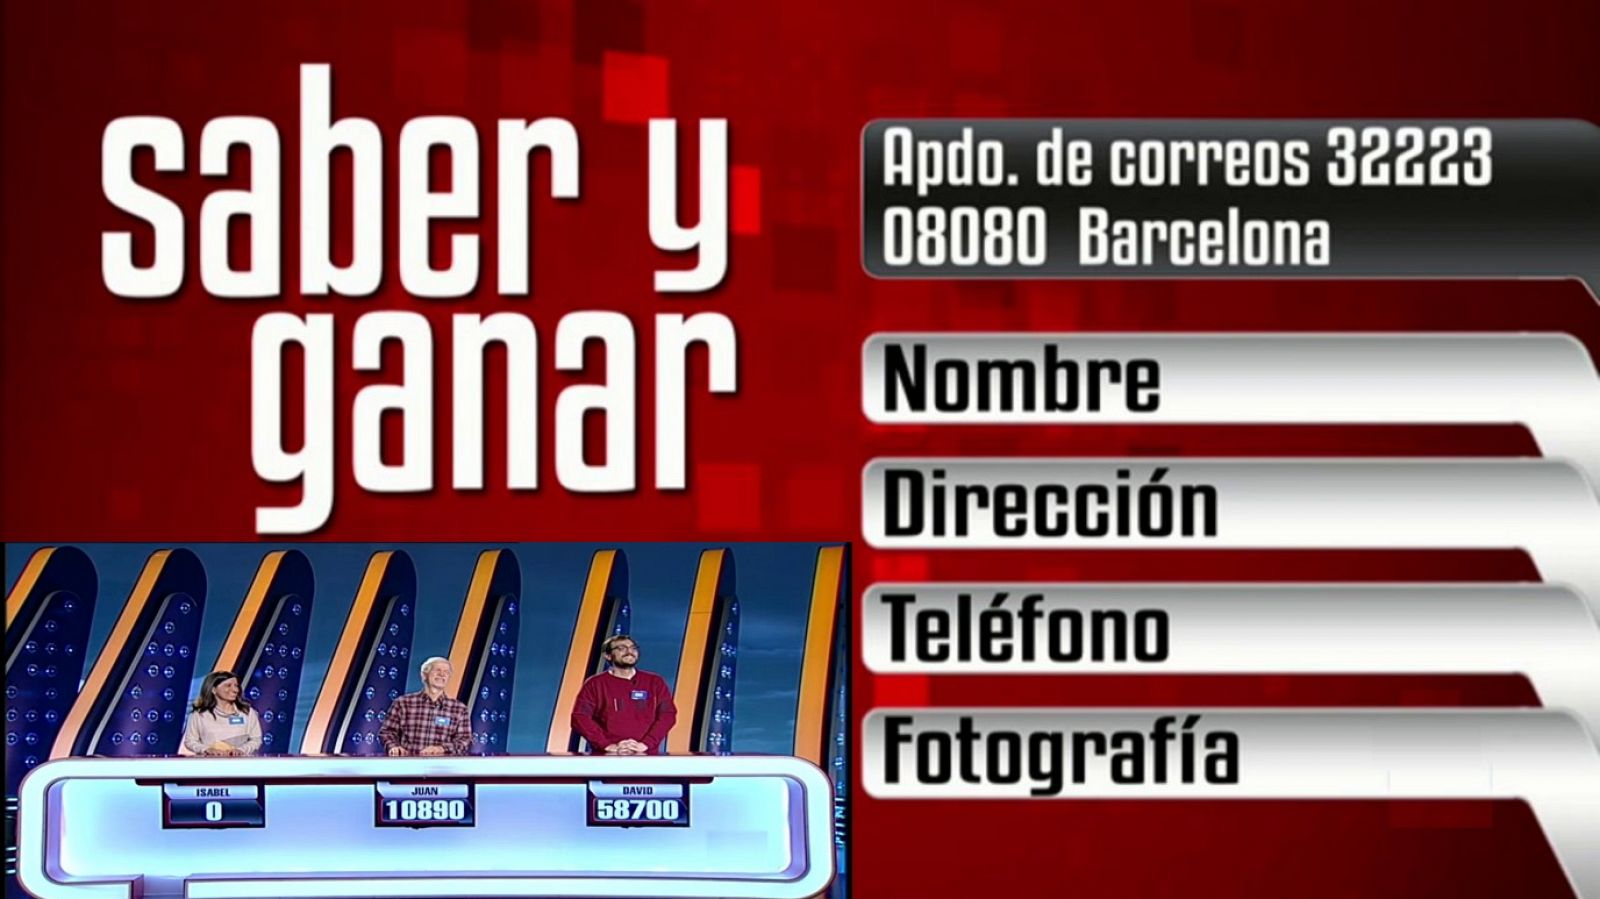 Saber y ganar - 17/01/20 - RTVE.es